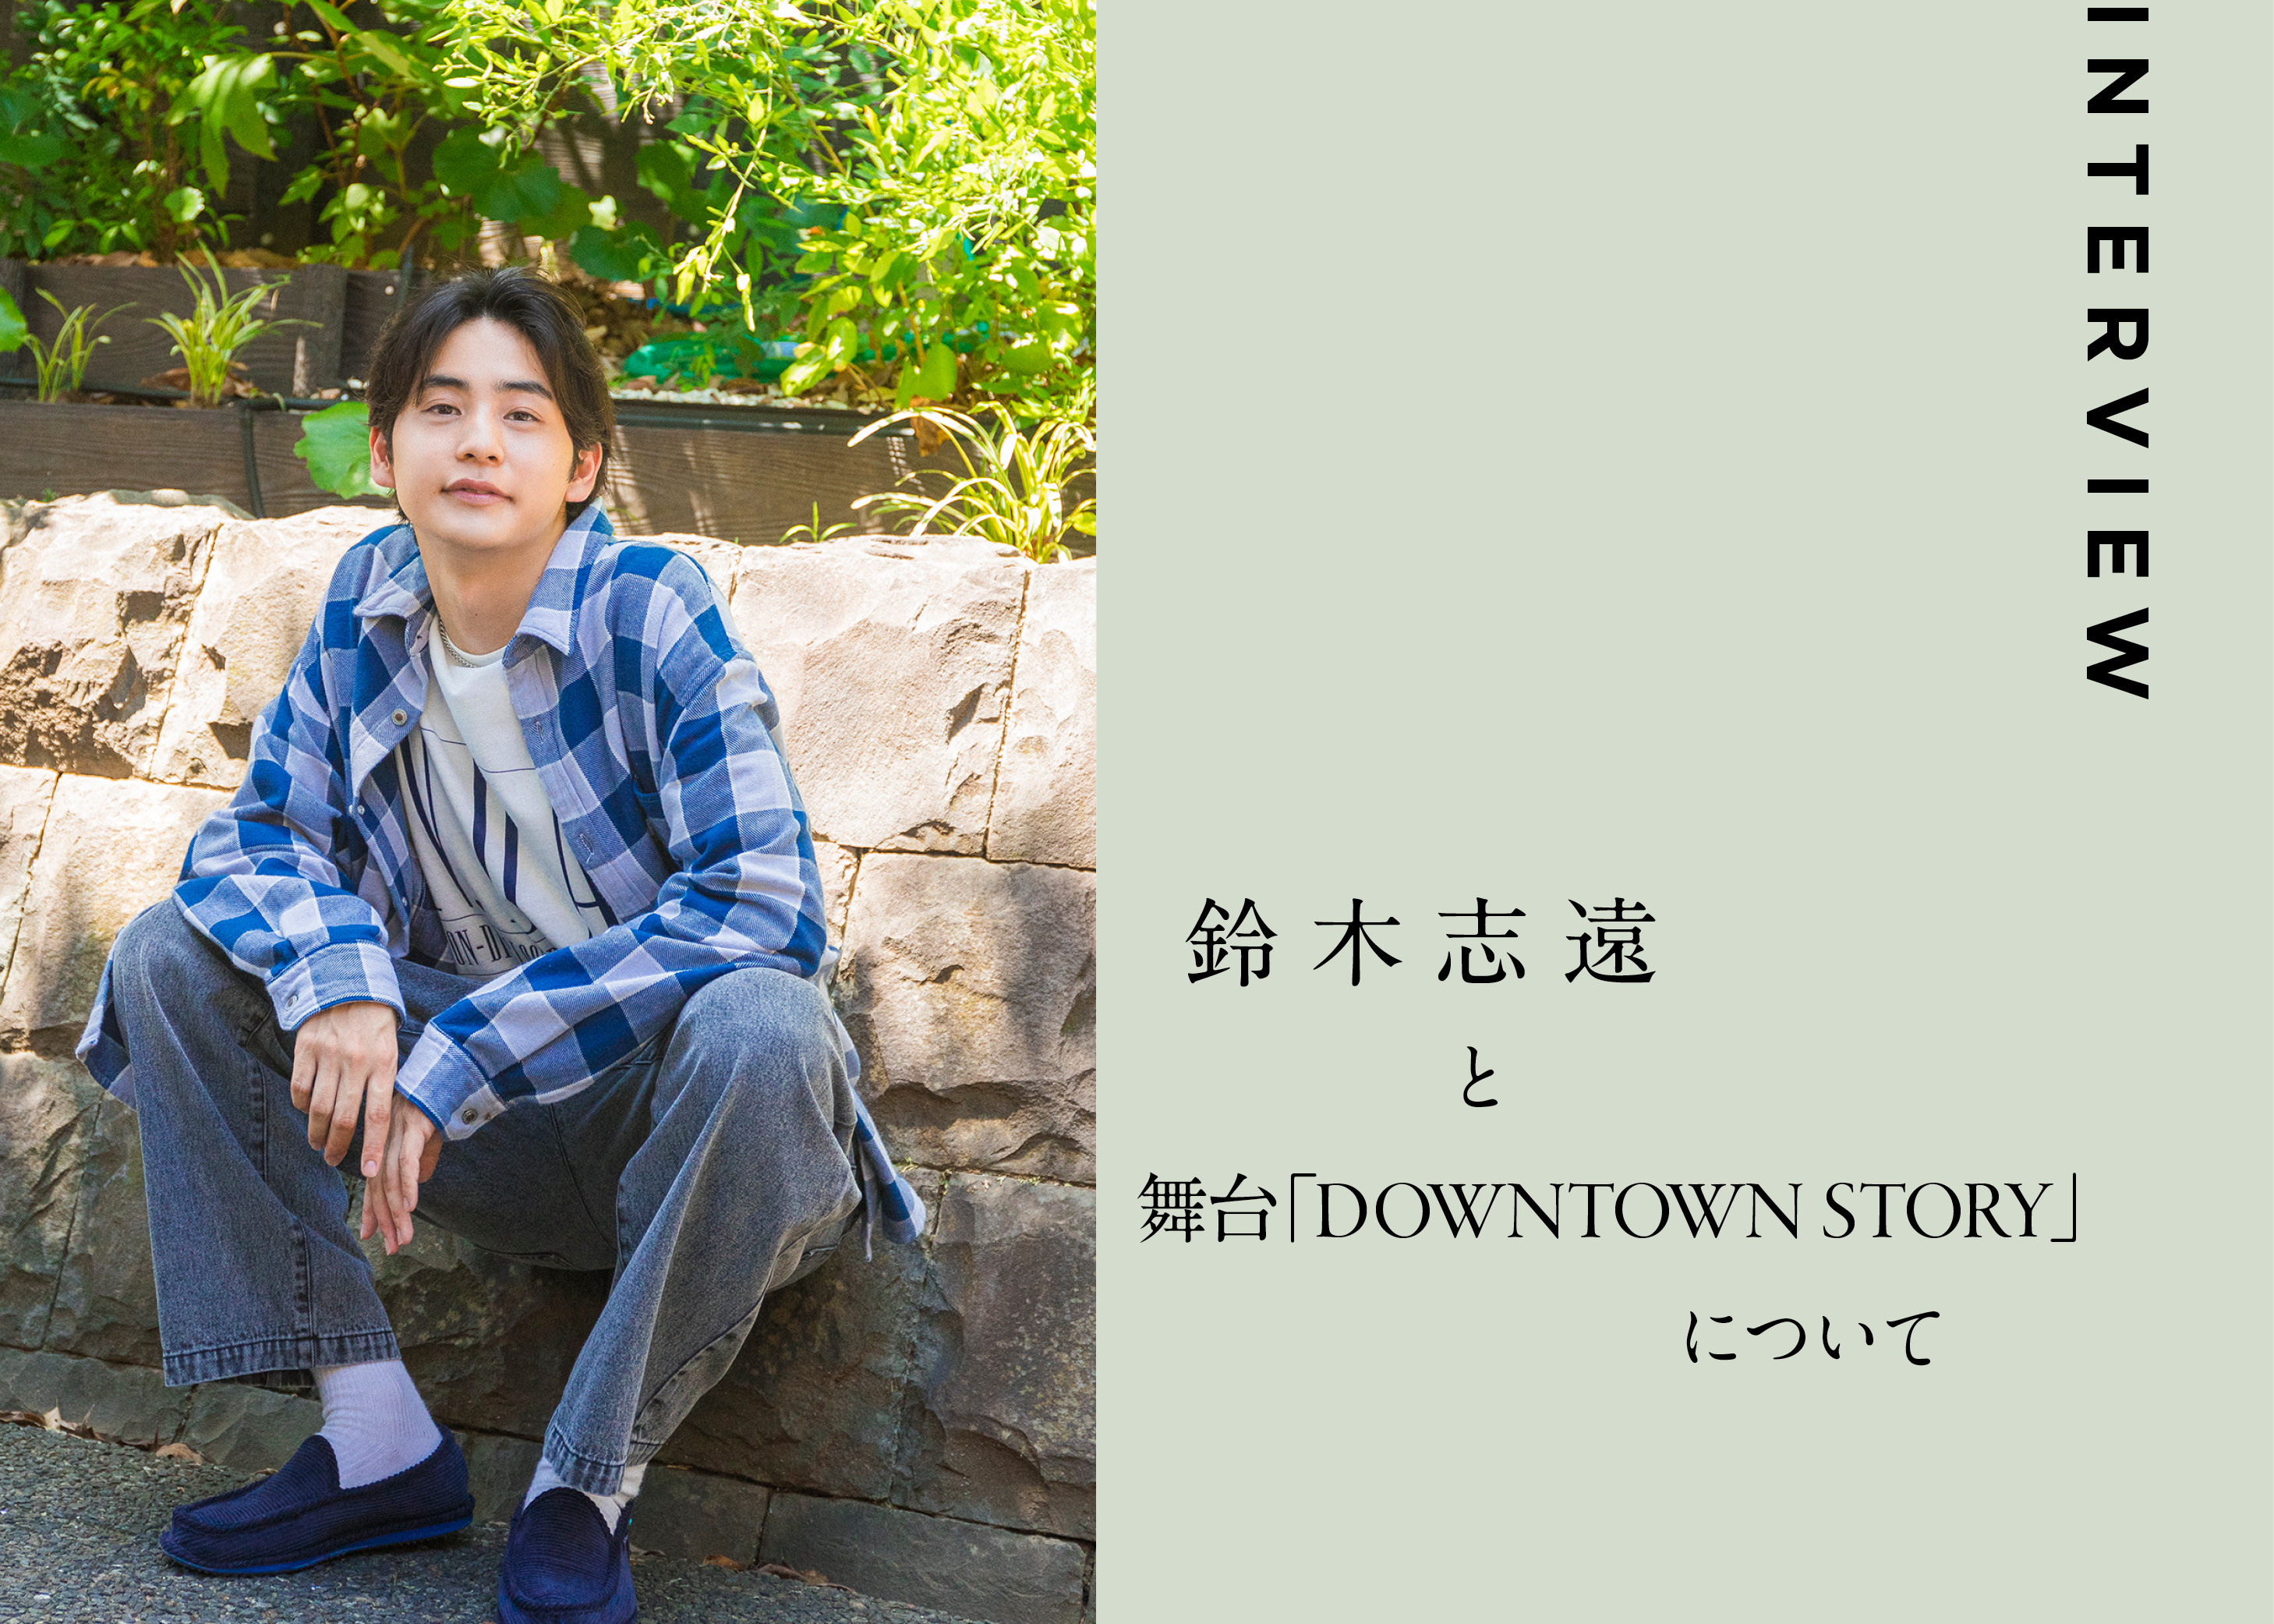 次なるチャレンジは舞台。鈴木志遠と舞台『DOWNTOWN STORY』について。